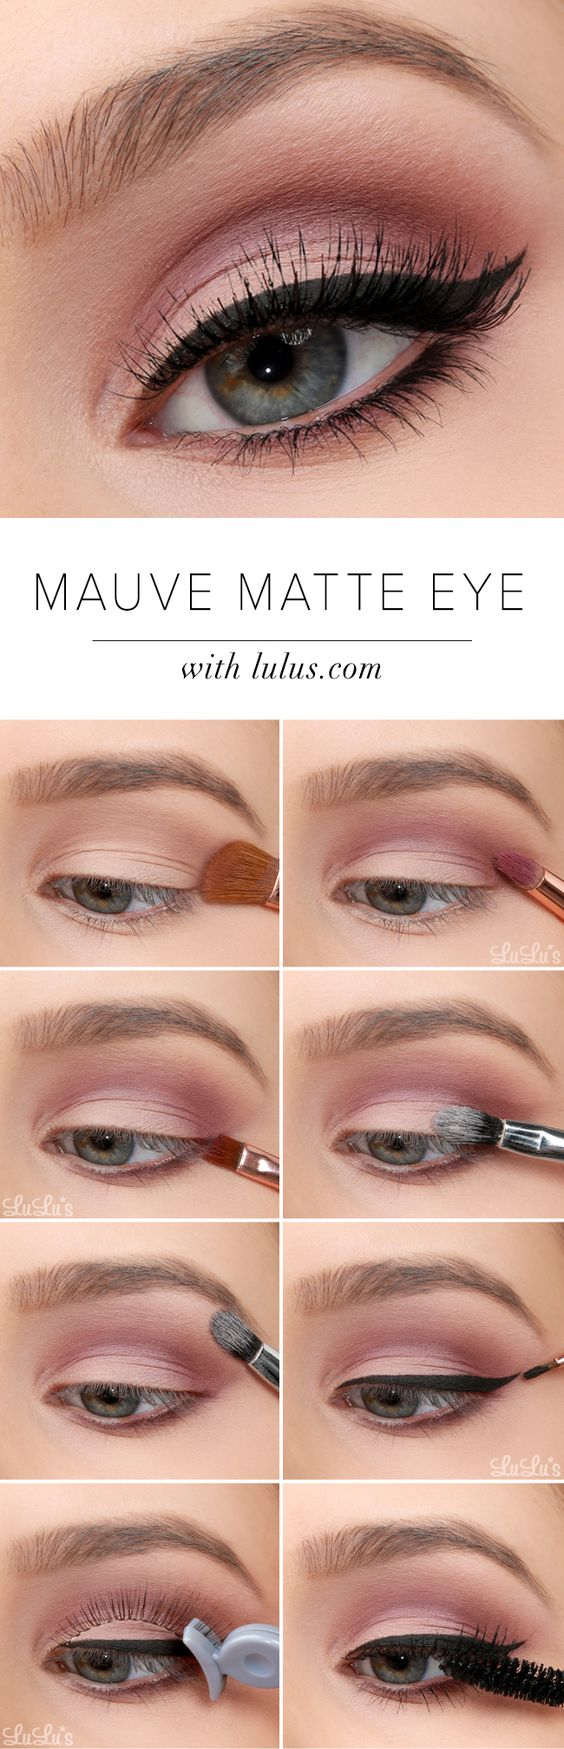 Natural Eye Makeup Tutorial 20 Easy Step Step Eyeshadow Tutorials For Beginners Her Style Code